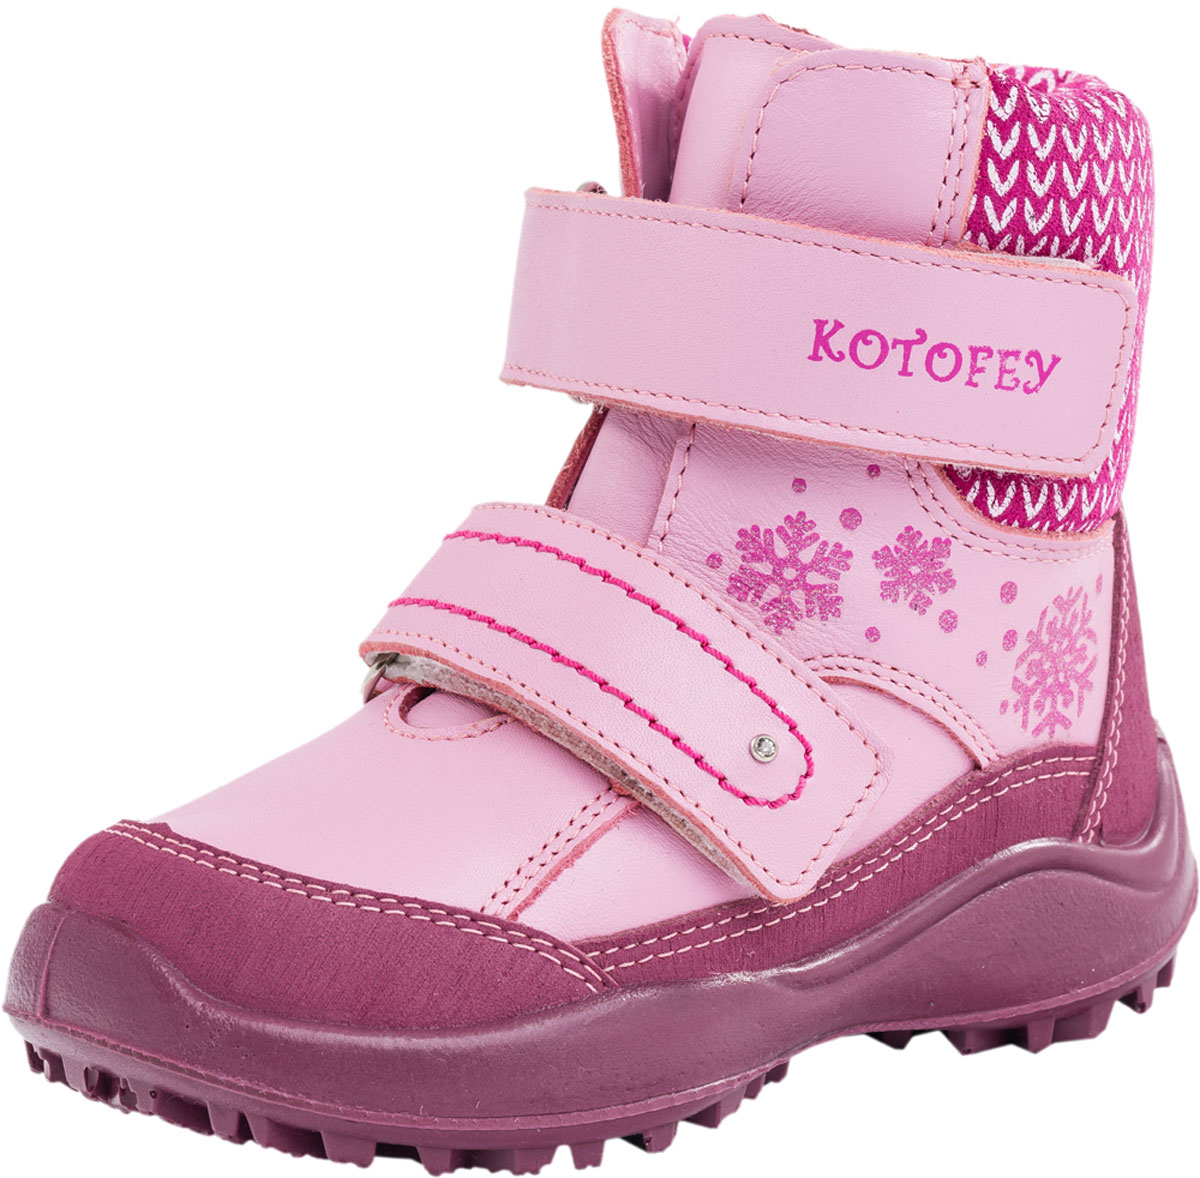 Ботинки для девочки Котофей, цвет: розовый. 452089-51. Размер 29